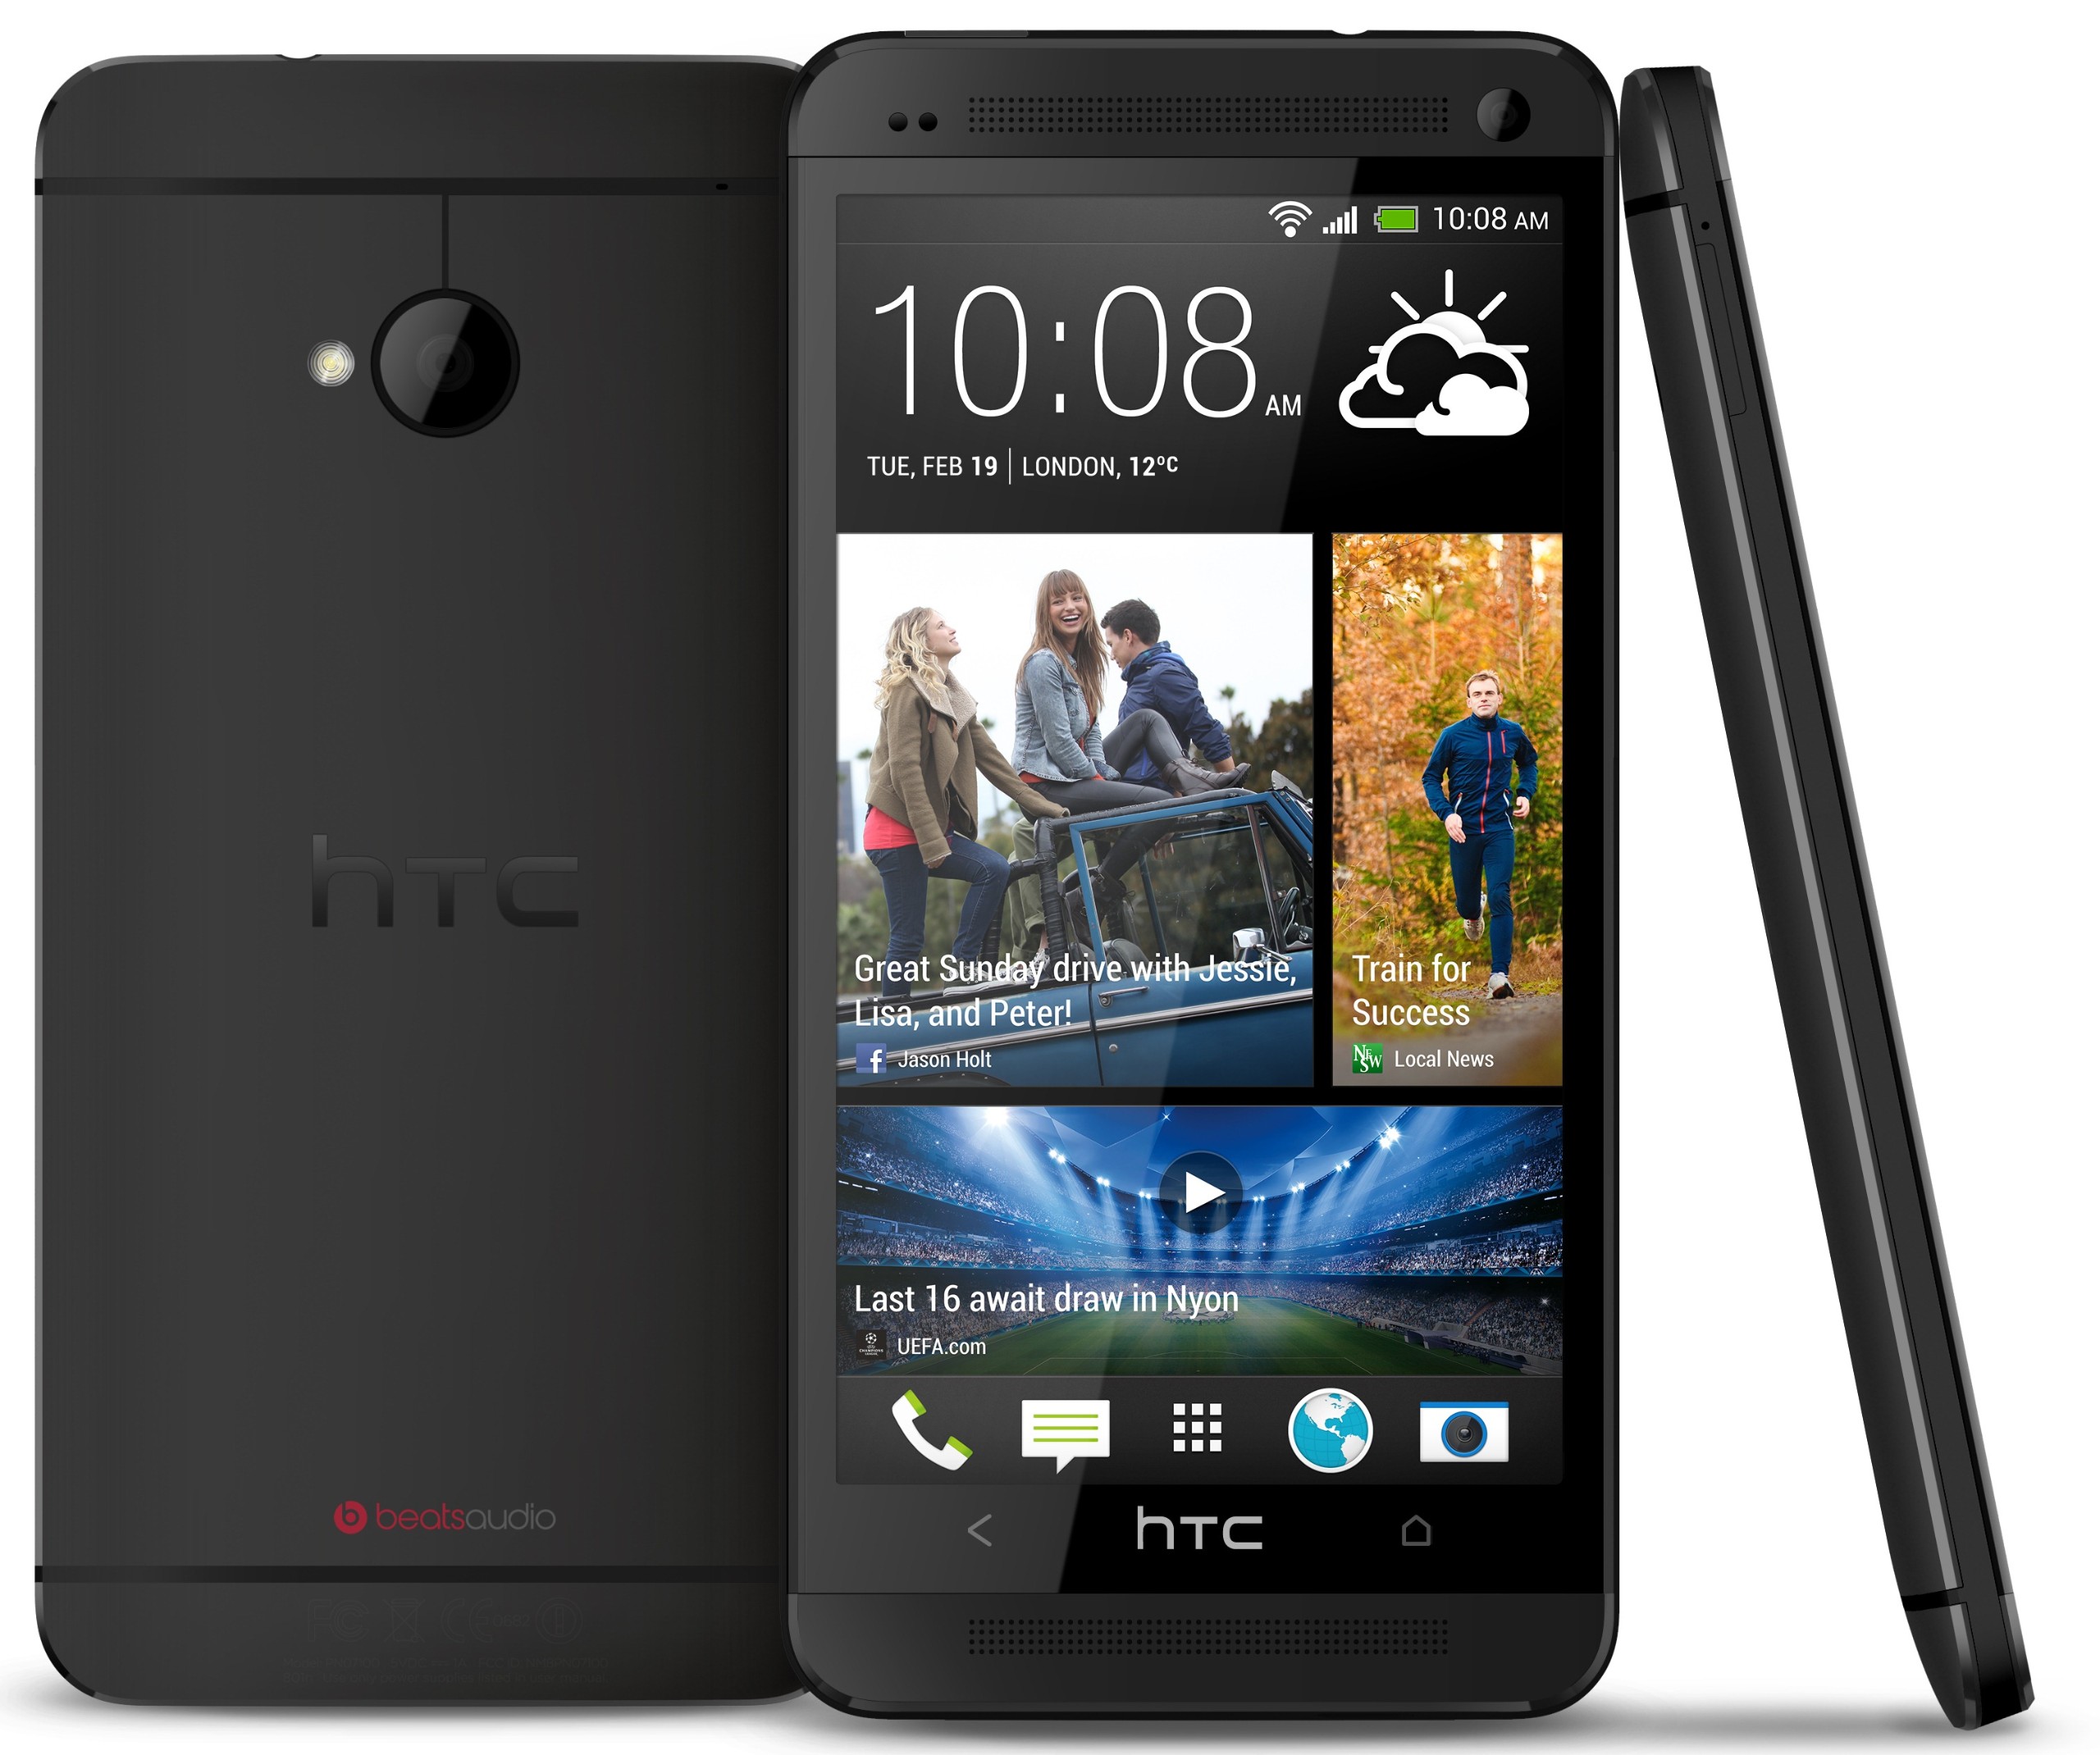 HTC One se lanzará en India en abril